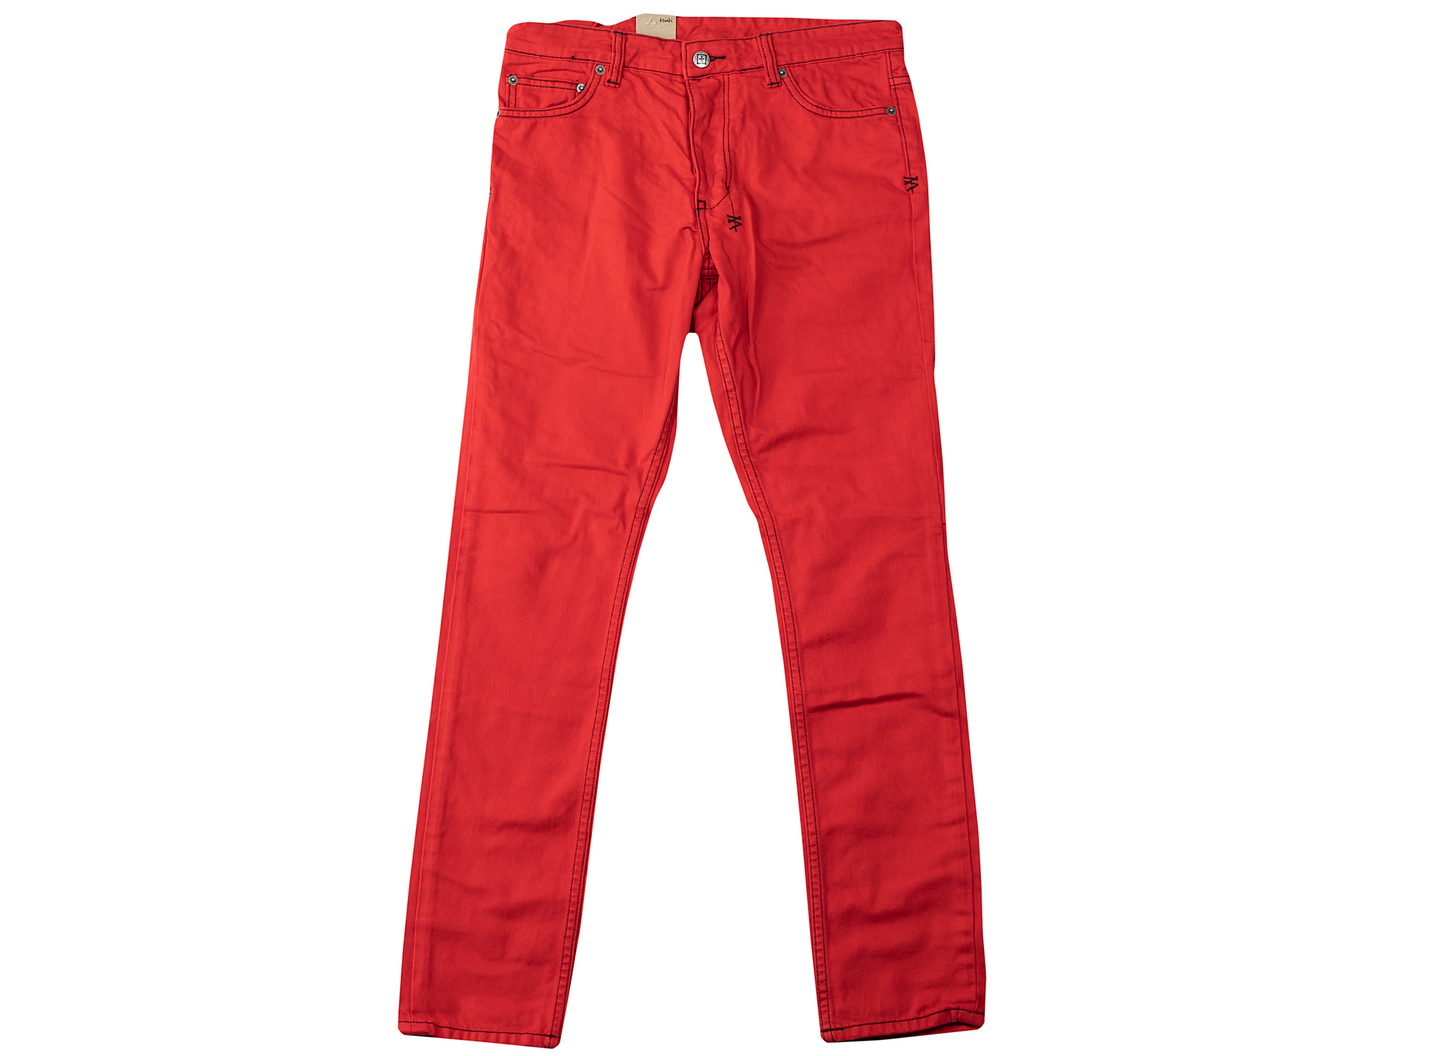 Ksubi Chitch Nitro Jeans in Red